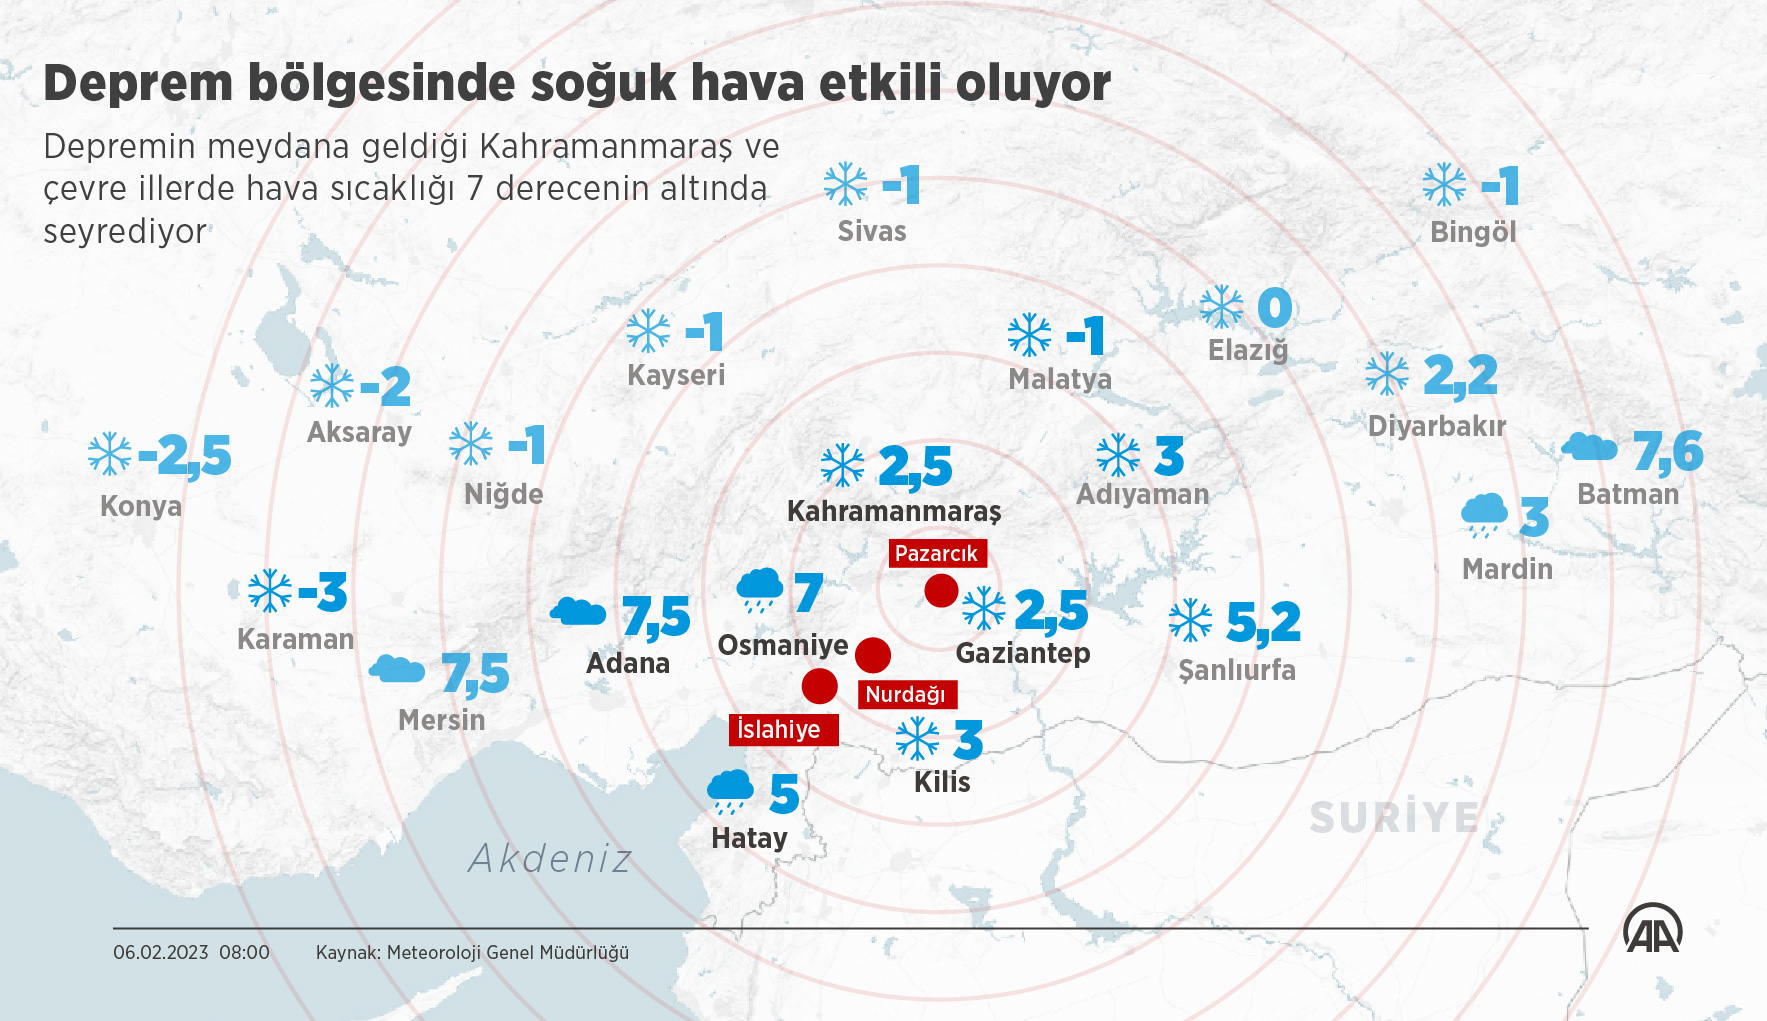 Сколько баллов турции. Карта землетрясения в Турции 6 февраля 2023. Землетрясение в Турции 2023 на карте. Землетрясение в Турции 2023 года на карте. Карта землетрясений в Турции февраль 2023.